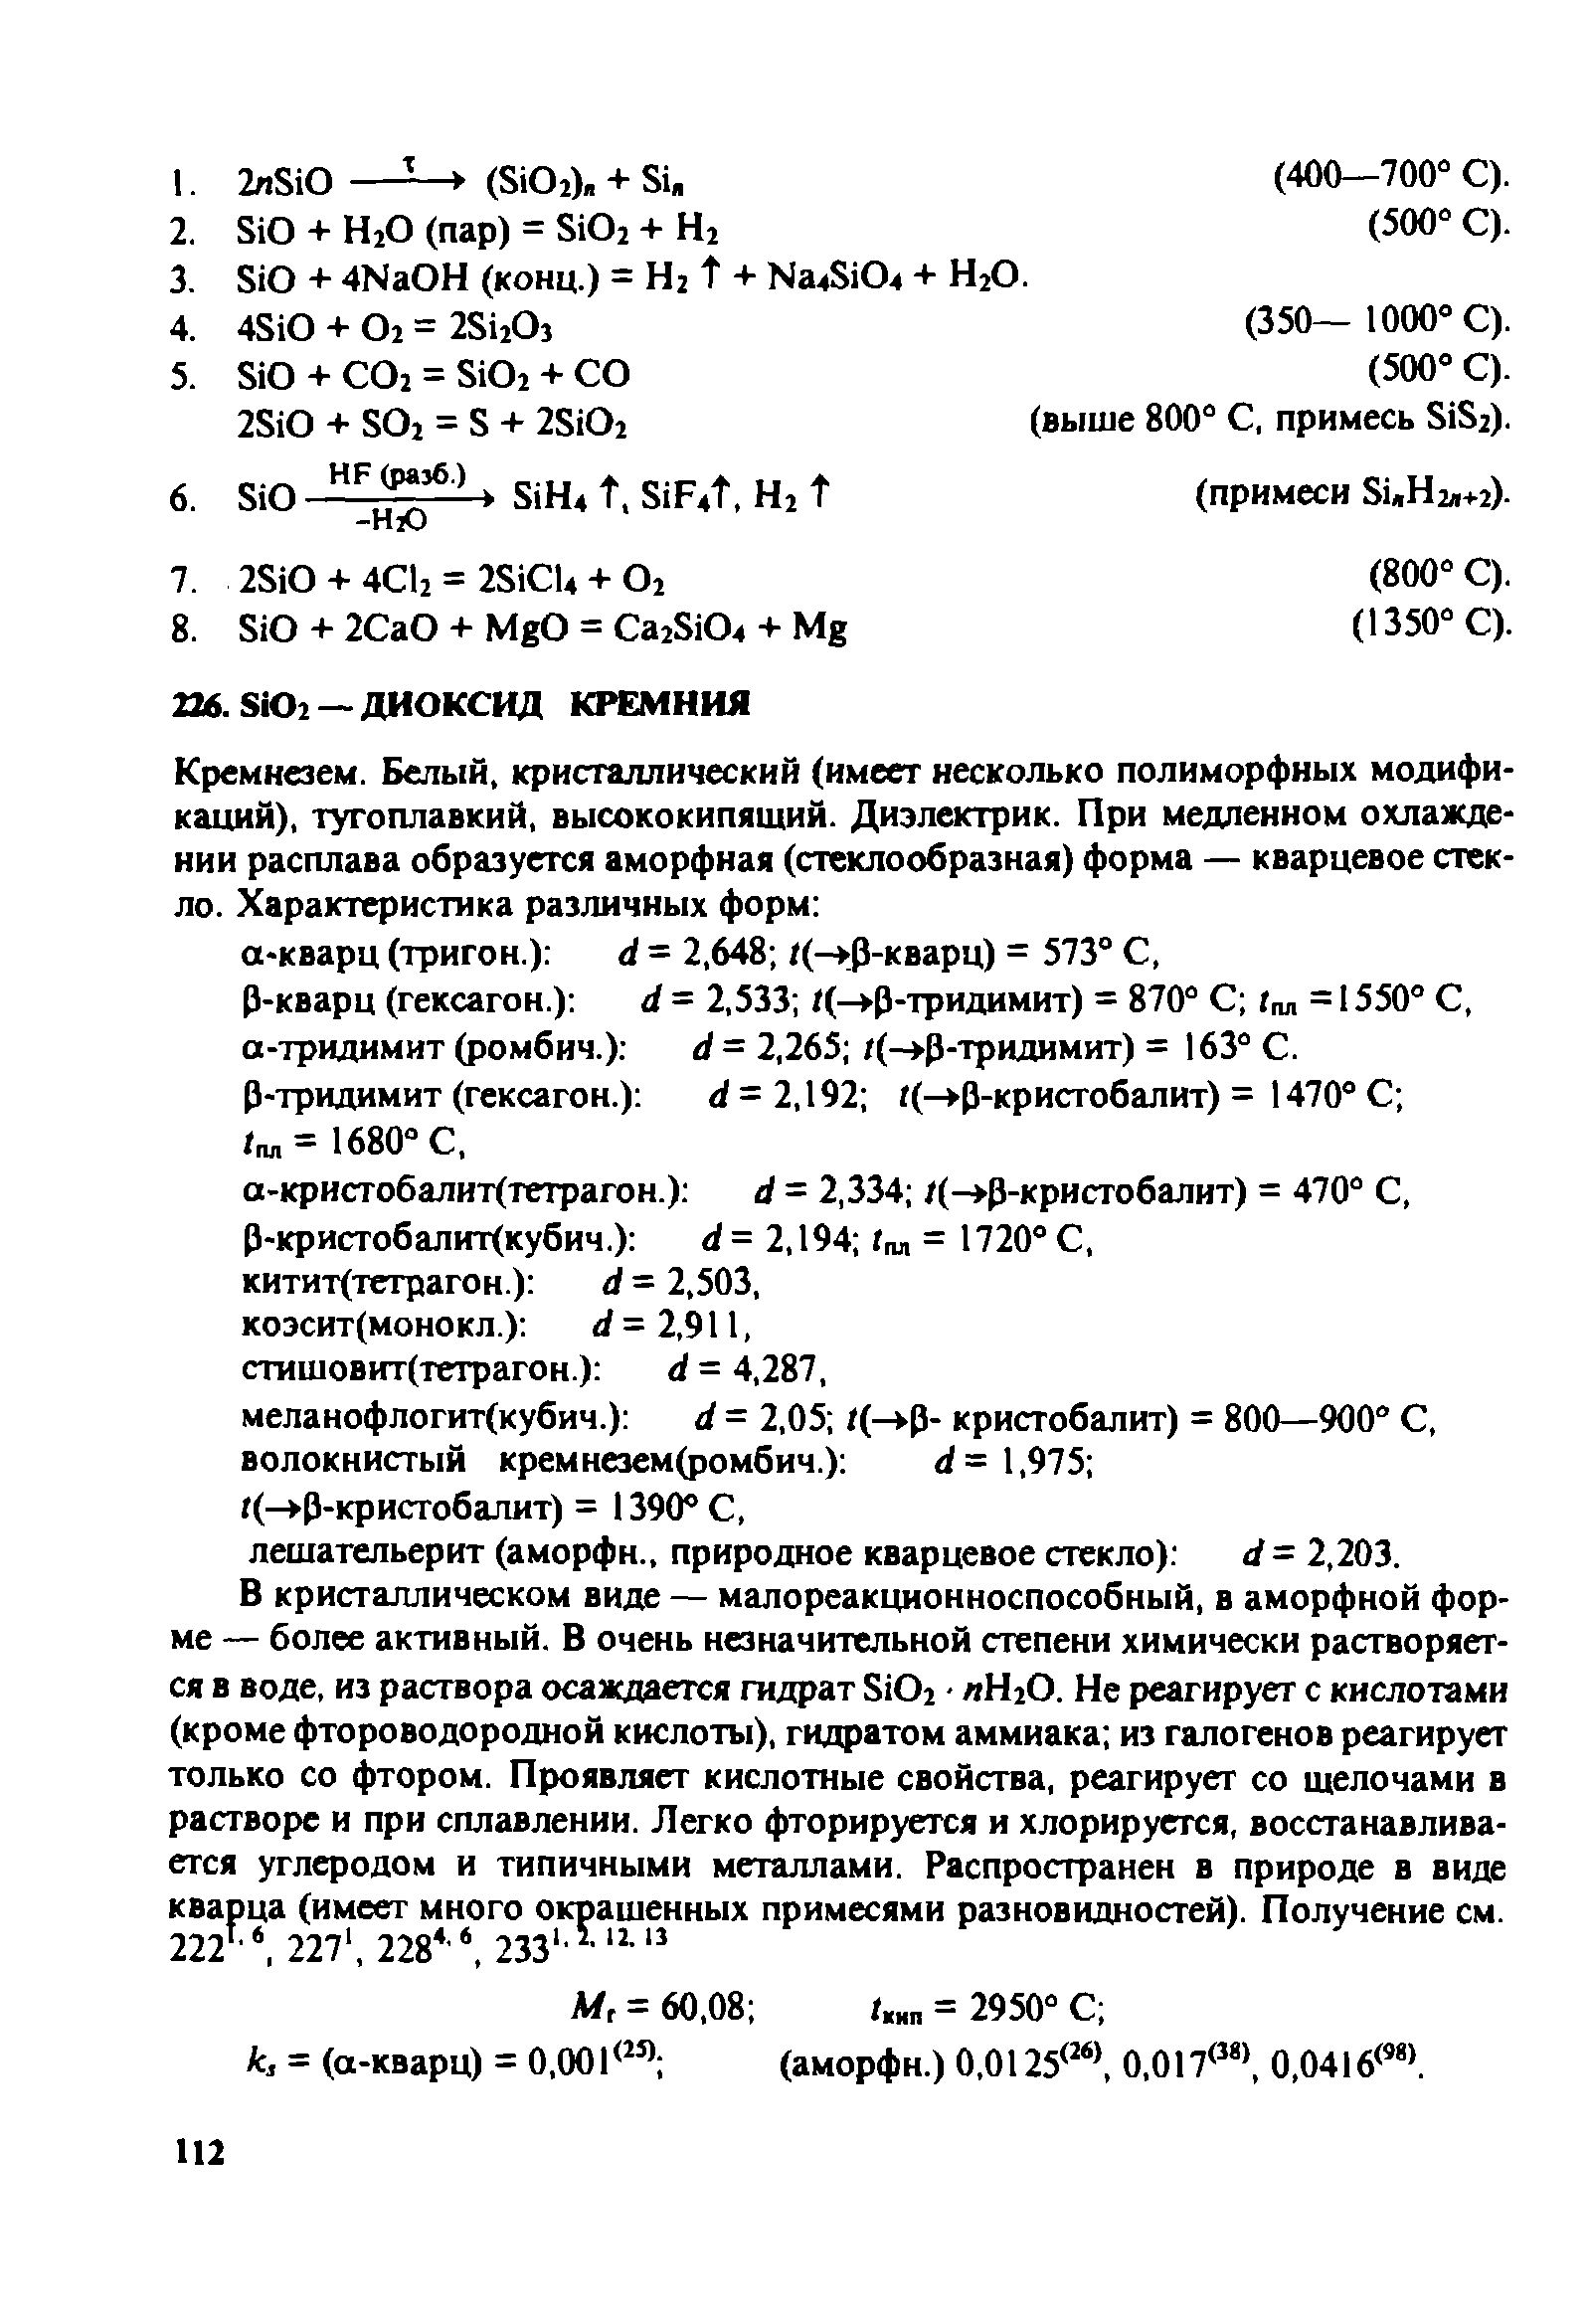 Р-кварц (гексагон.) d = 2,533 /(- р-тридимит) = 870° С г л = 1550° С, а-тридимит (ромбич.) d = 2,265 /(- р-тридимит) = 163° С.